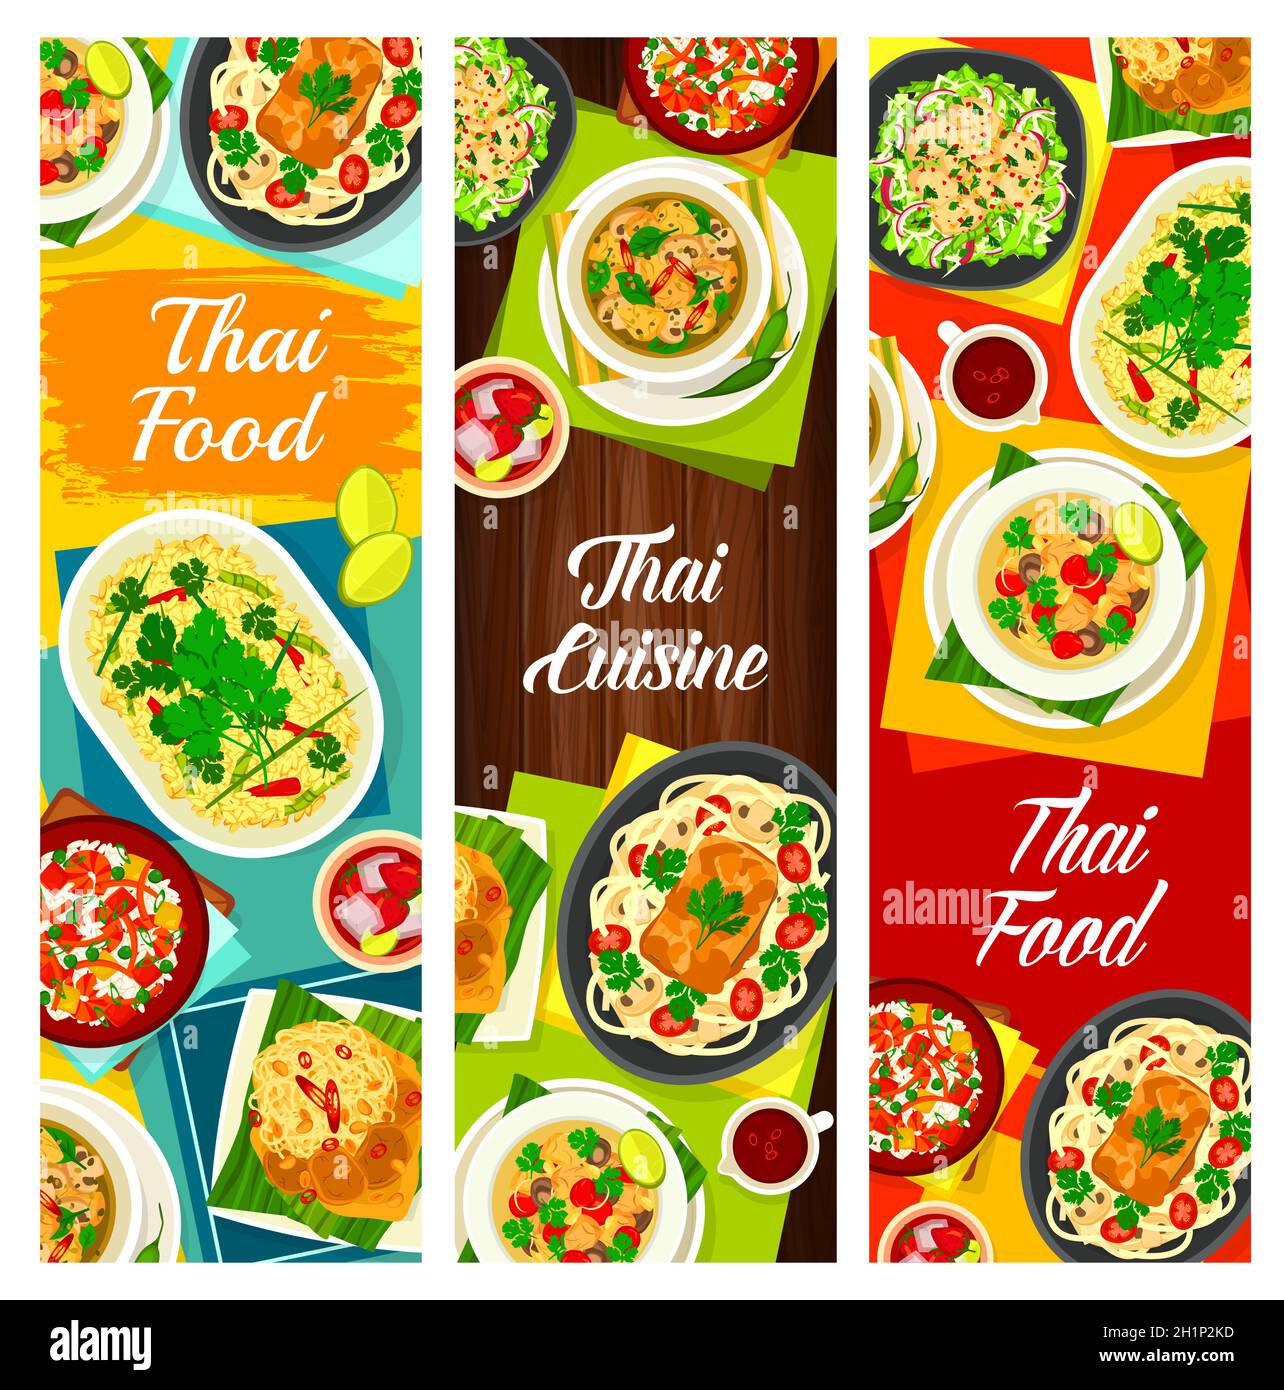 Thailändische Küche Vektor Pilzsuppe tom Klong hat ruam, Hühnersuppe tom Kha Gai und Zitronengras Tee. Fisch-Kokosnussfleisch, Nudeln mit Schweinefleisch-Satay und Erbse Stock Vektor